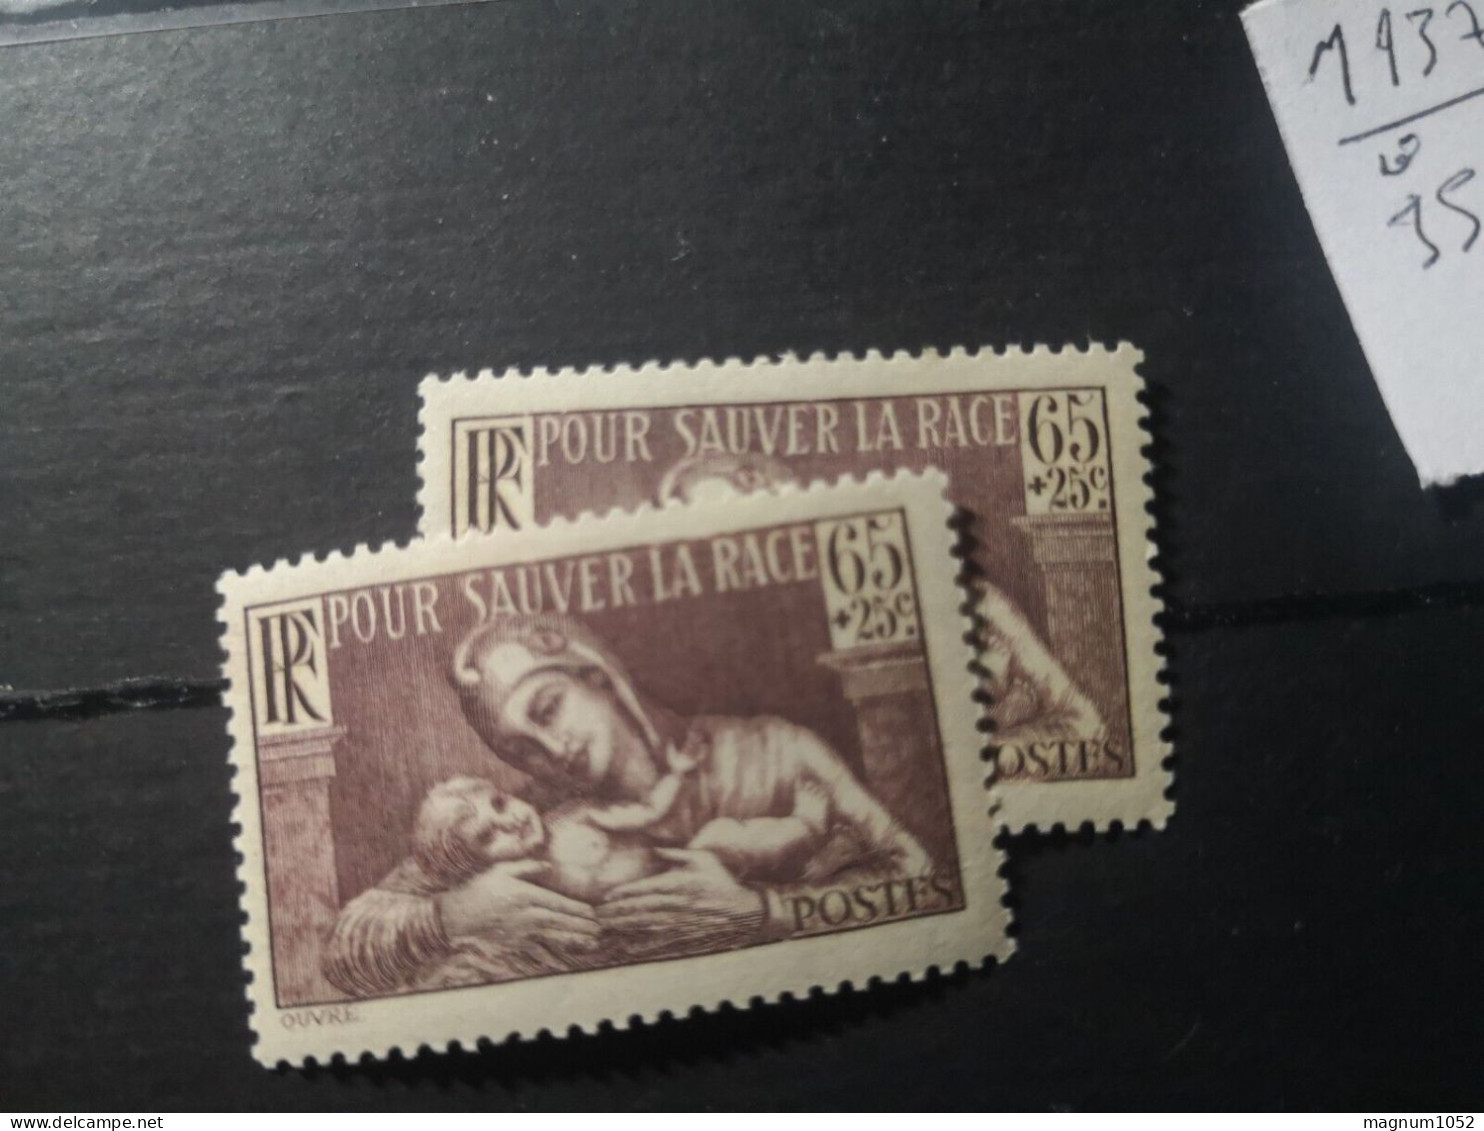 VARIETE  N 356 **  - 1 TB  BRUN UNICOLORE AU LIEU DE BRUN LILAS - TRES VISIBLE AU SCANN - RRR !!! - Unused Stamps